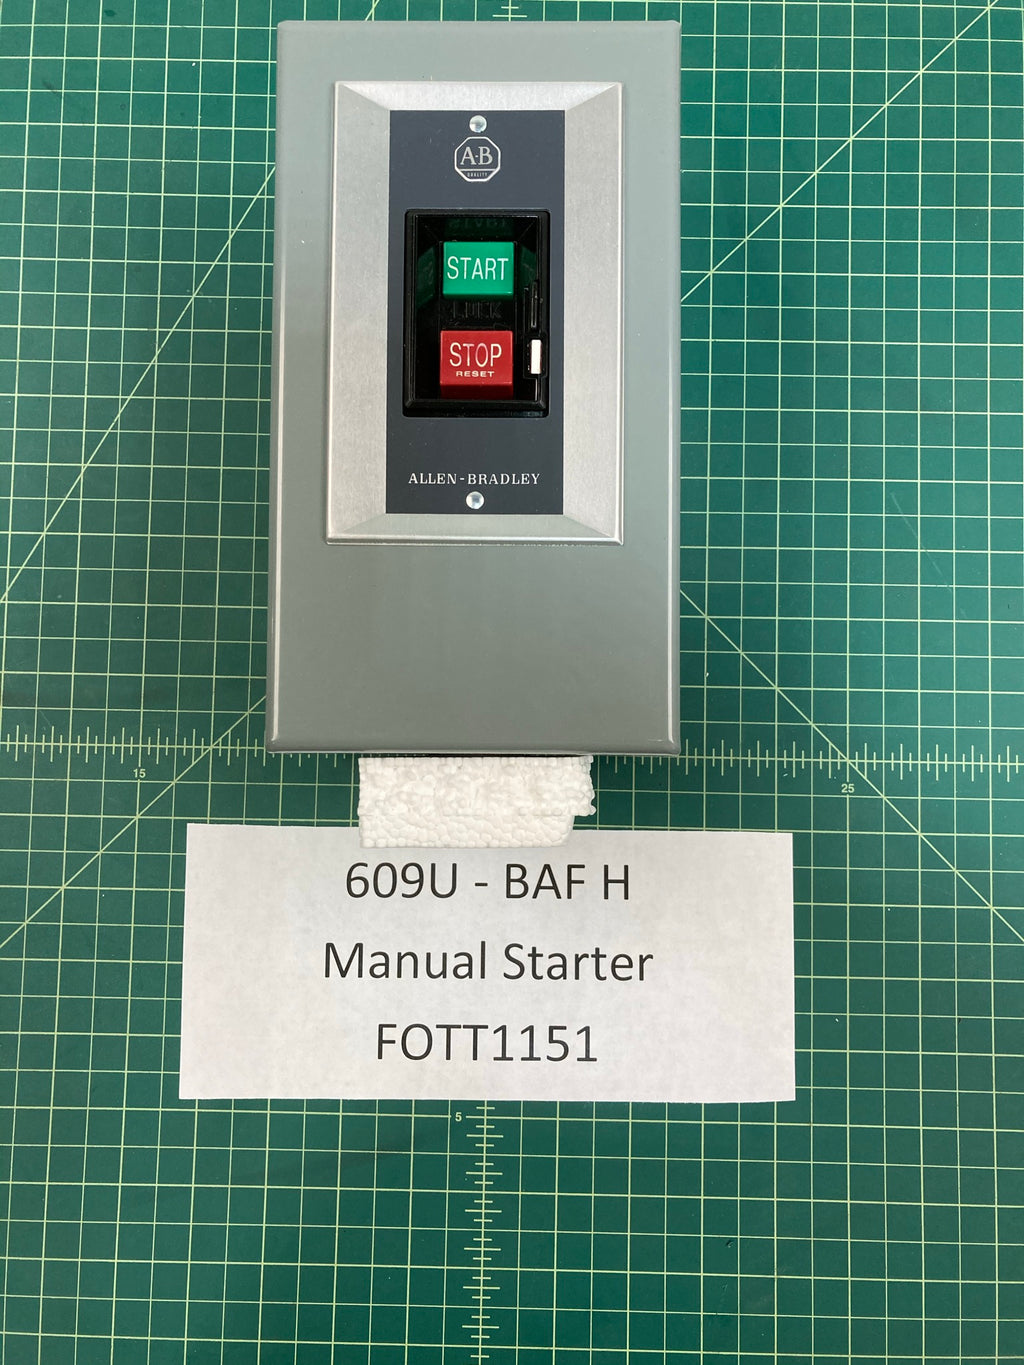 ALLEN - BRADLEY MANUAL STARTER 609U - BAF H